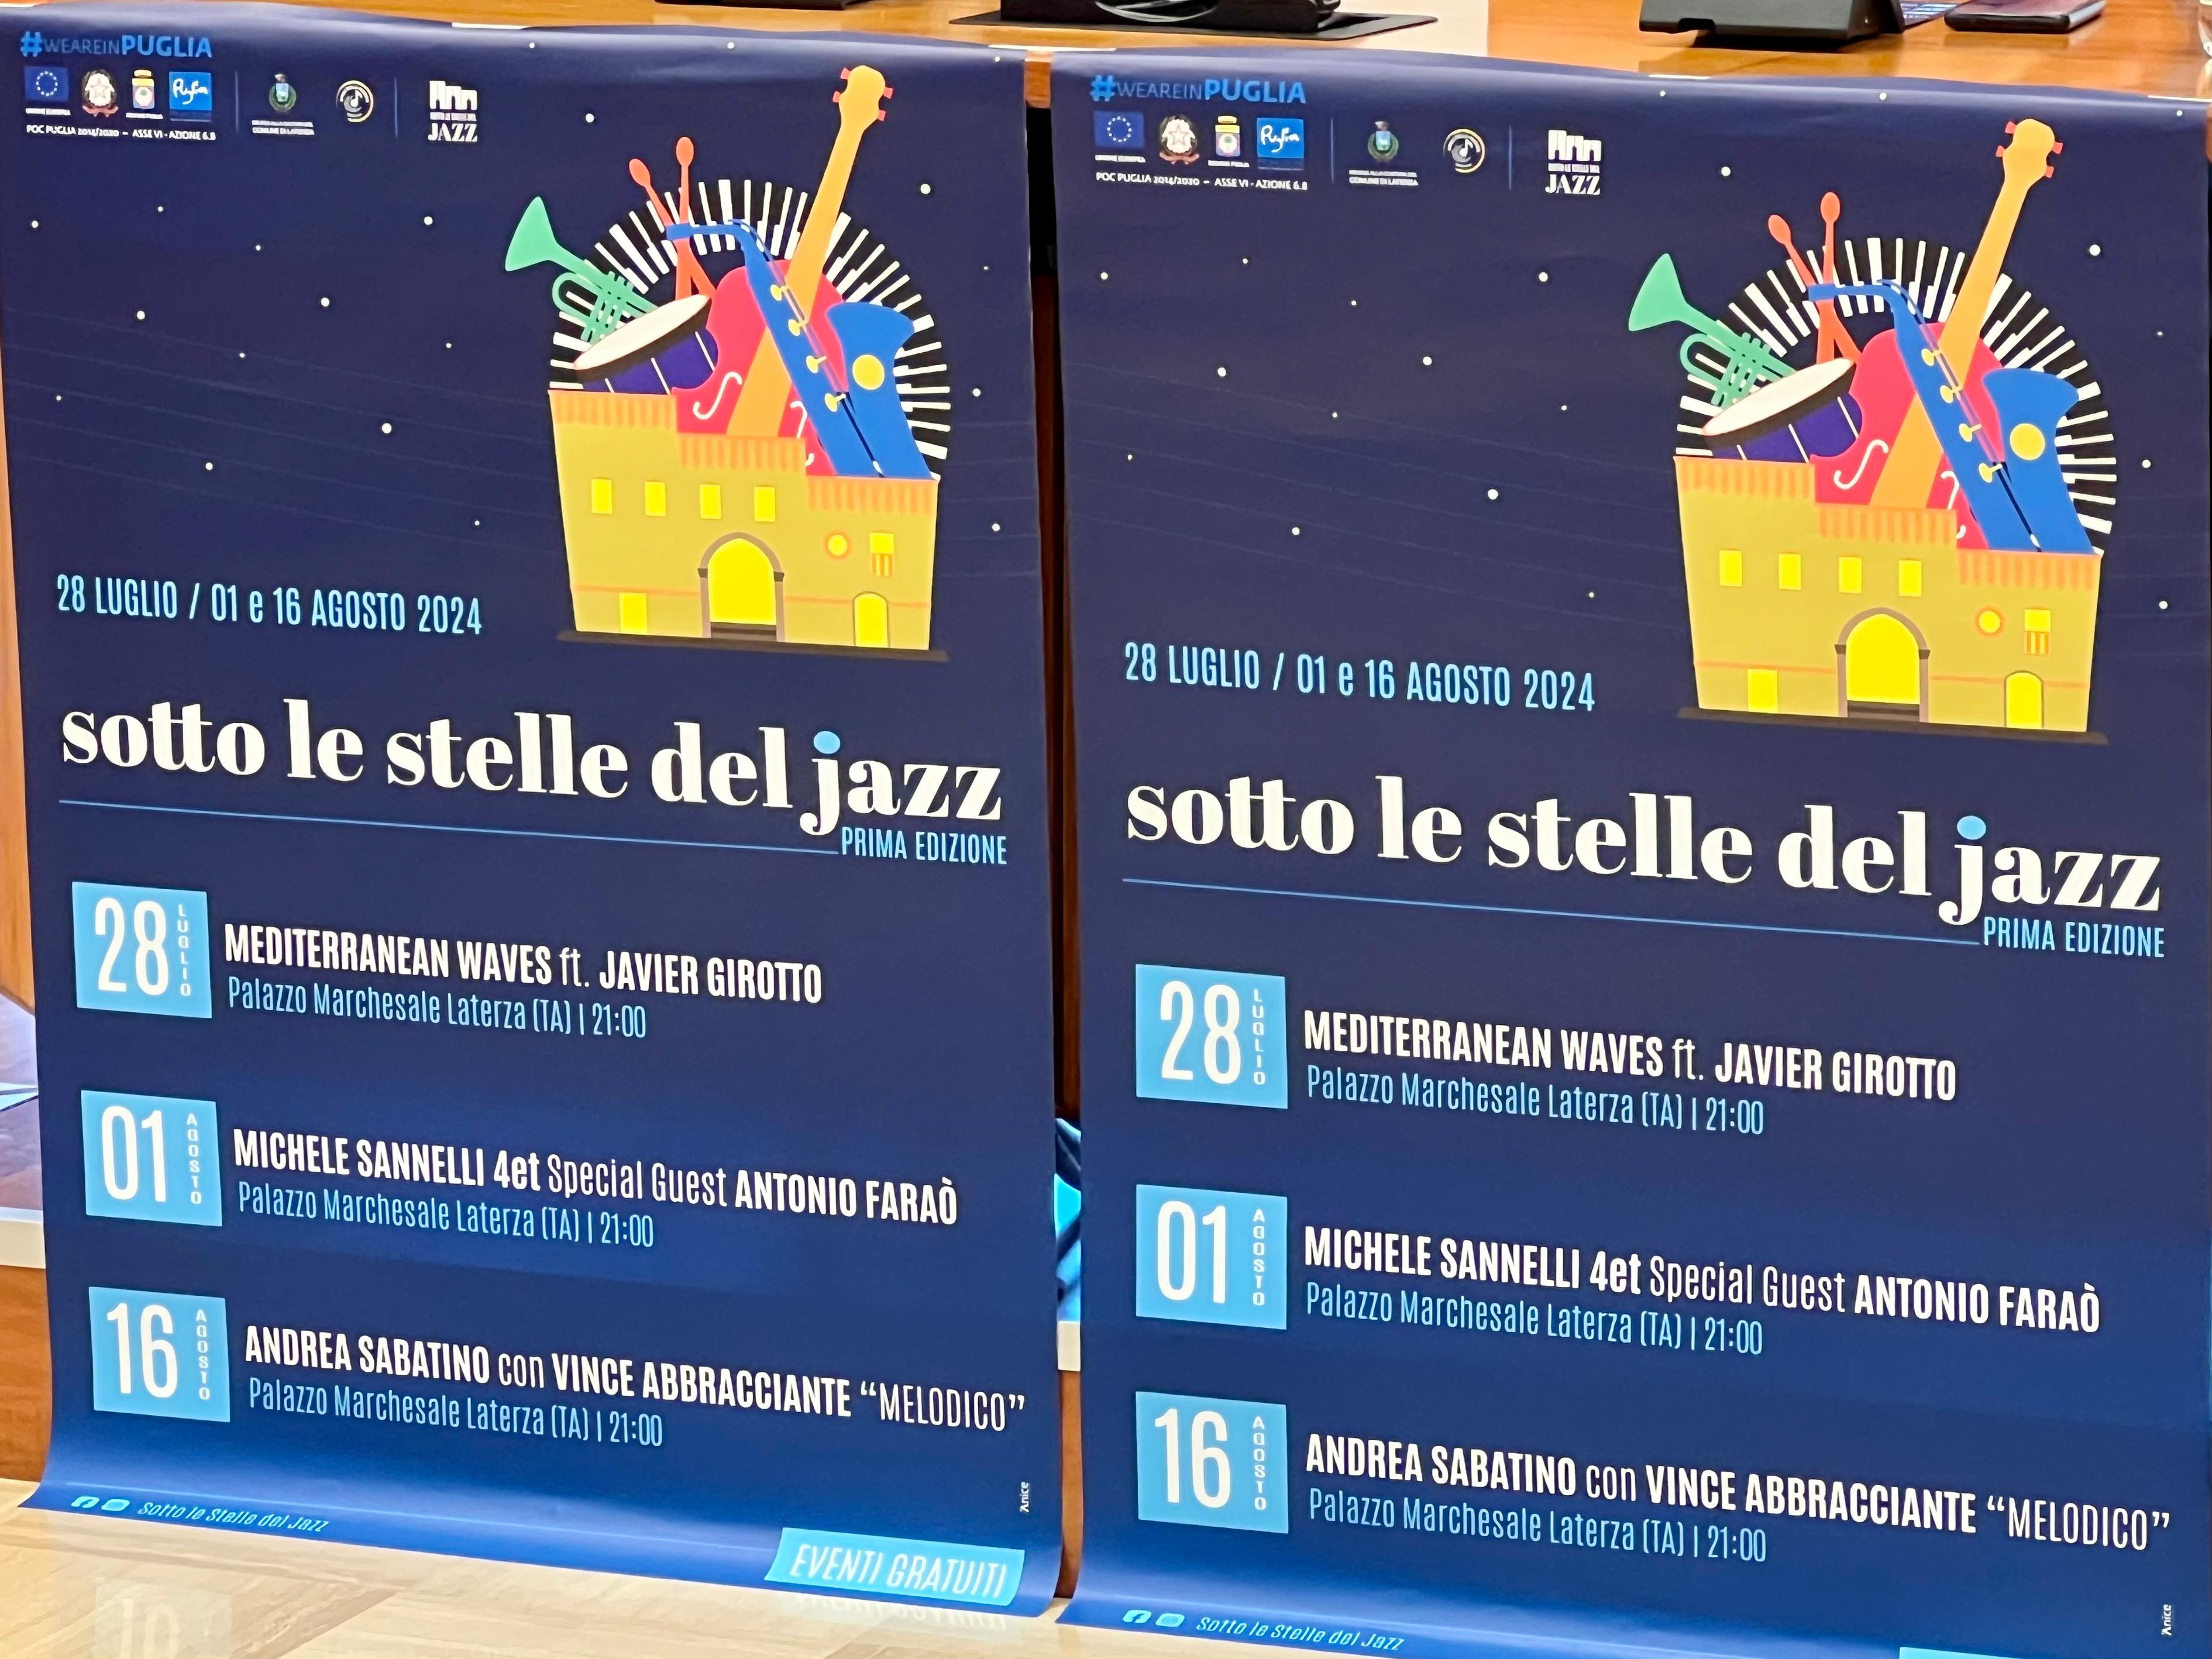 Galleria Sotto le stelle del jazz: la rassegna musicale a Laterza (Ta) il 28 luglio, l’1 e il 16 agosto 2024 - Diapositiva 3 di 12